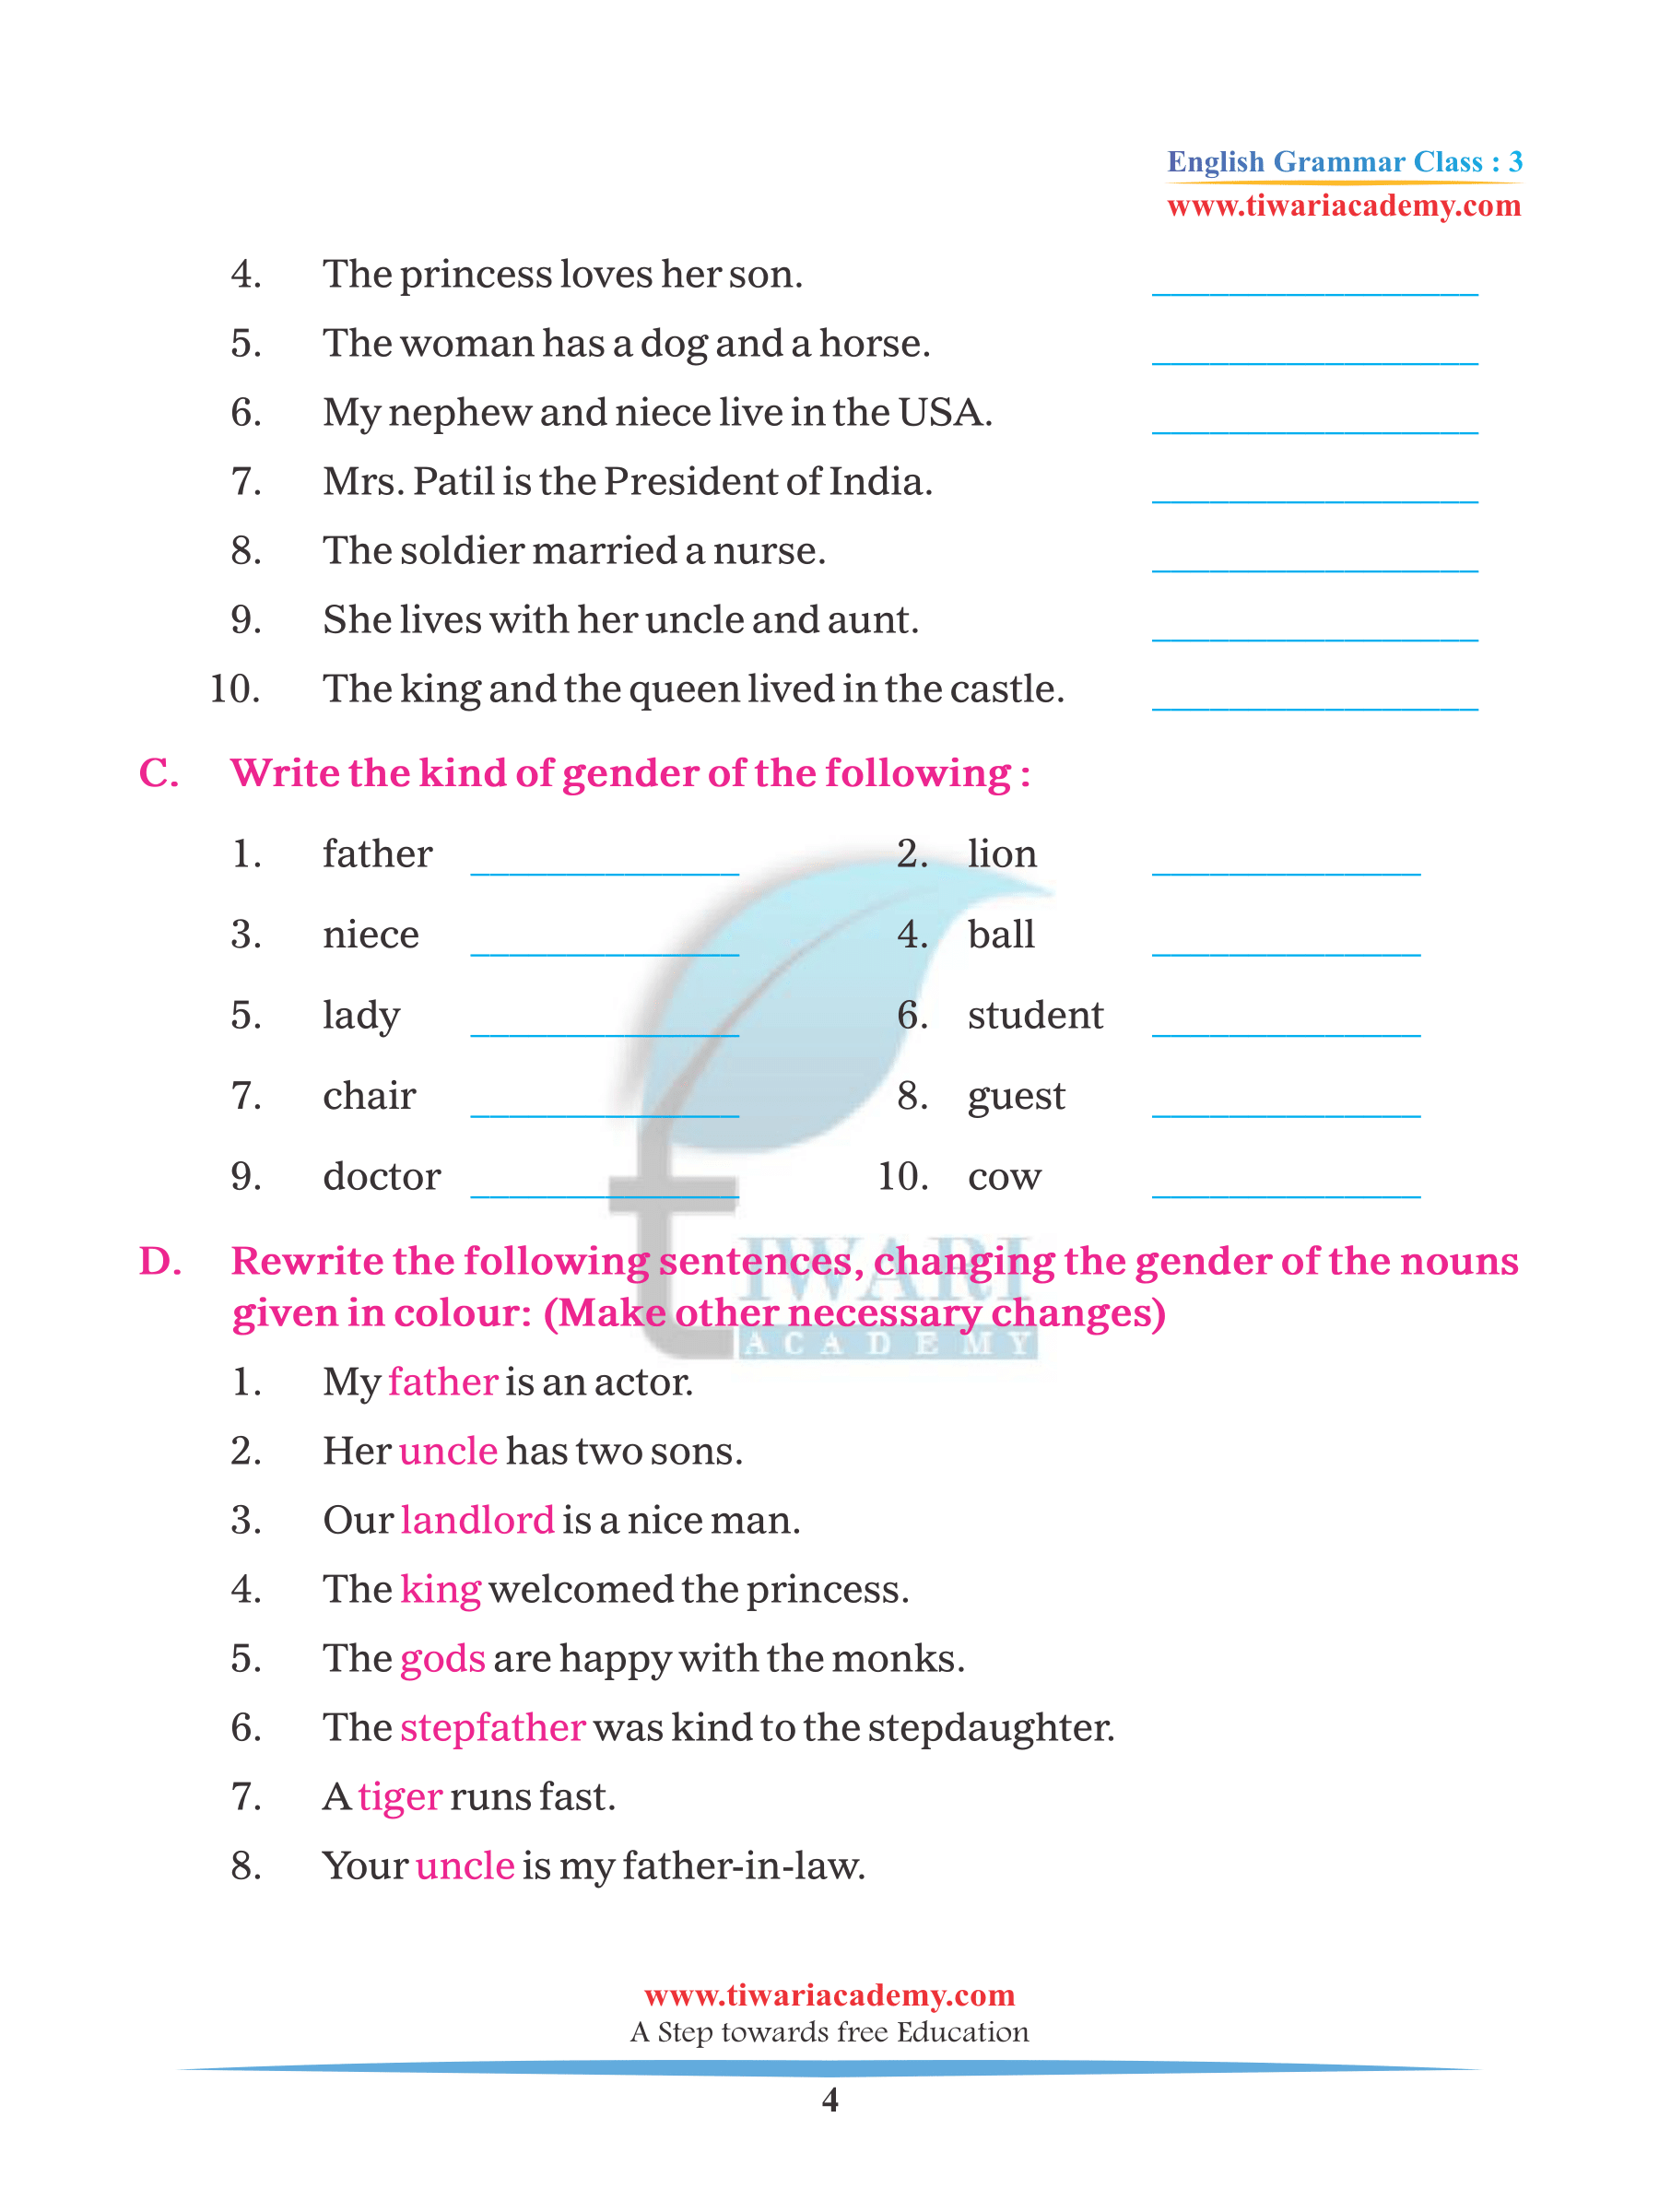 class 3 english grammar chapter 6 noun gender for 2022 2023 pdf